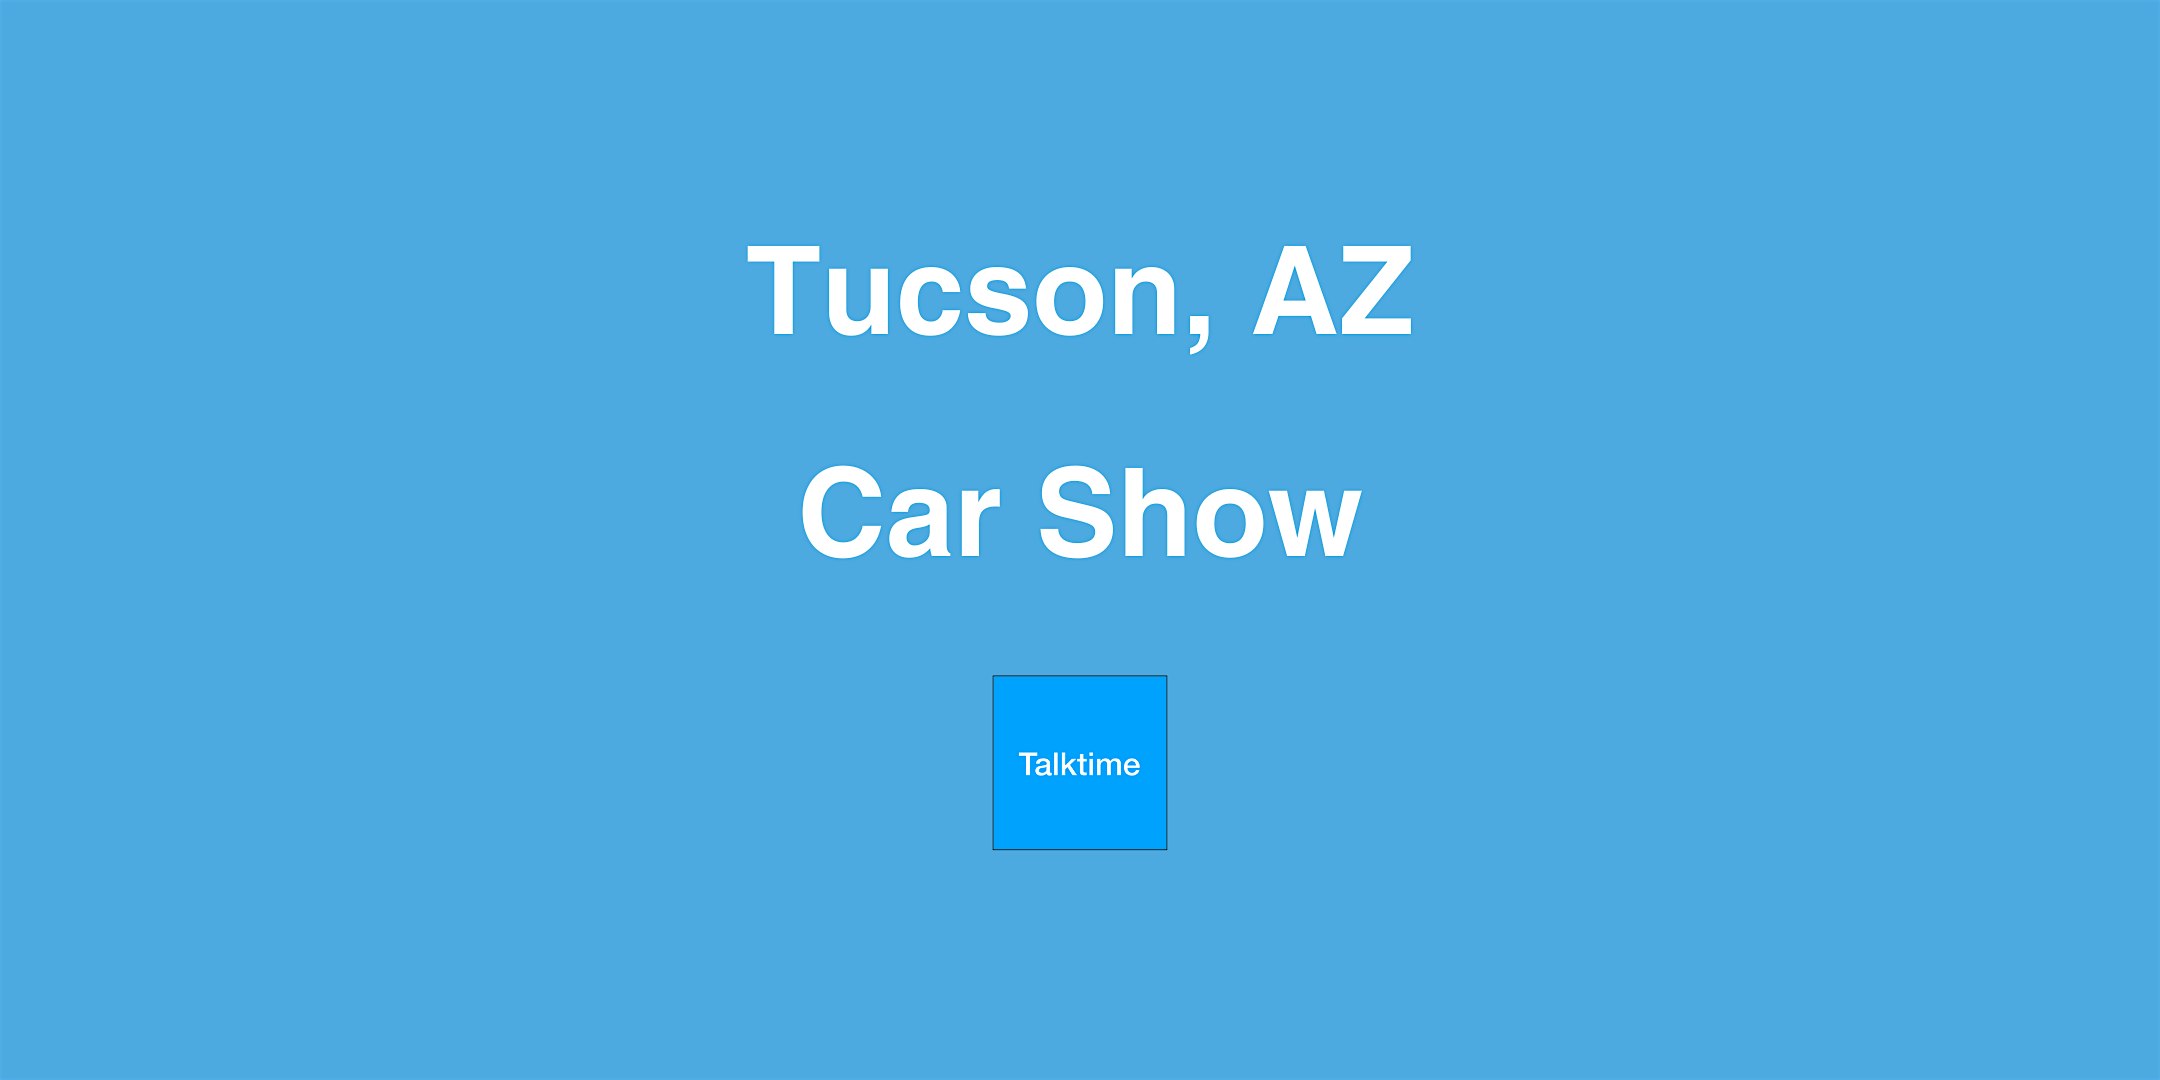 Car Show - Tucson